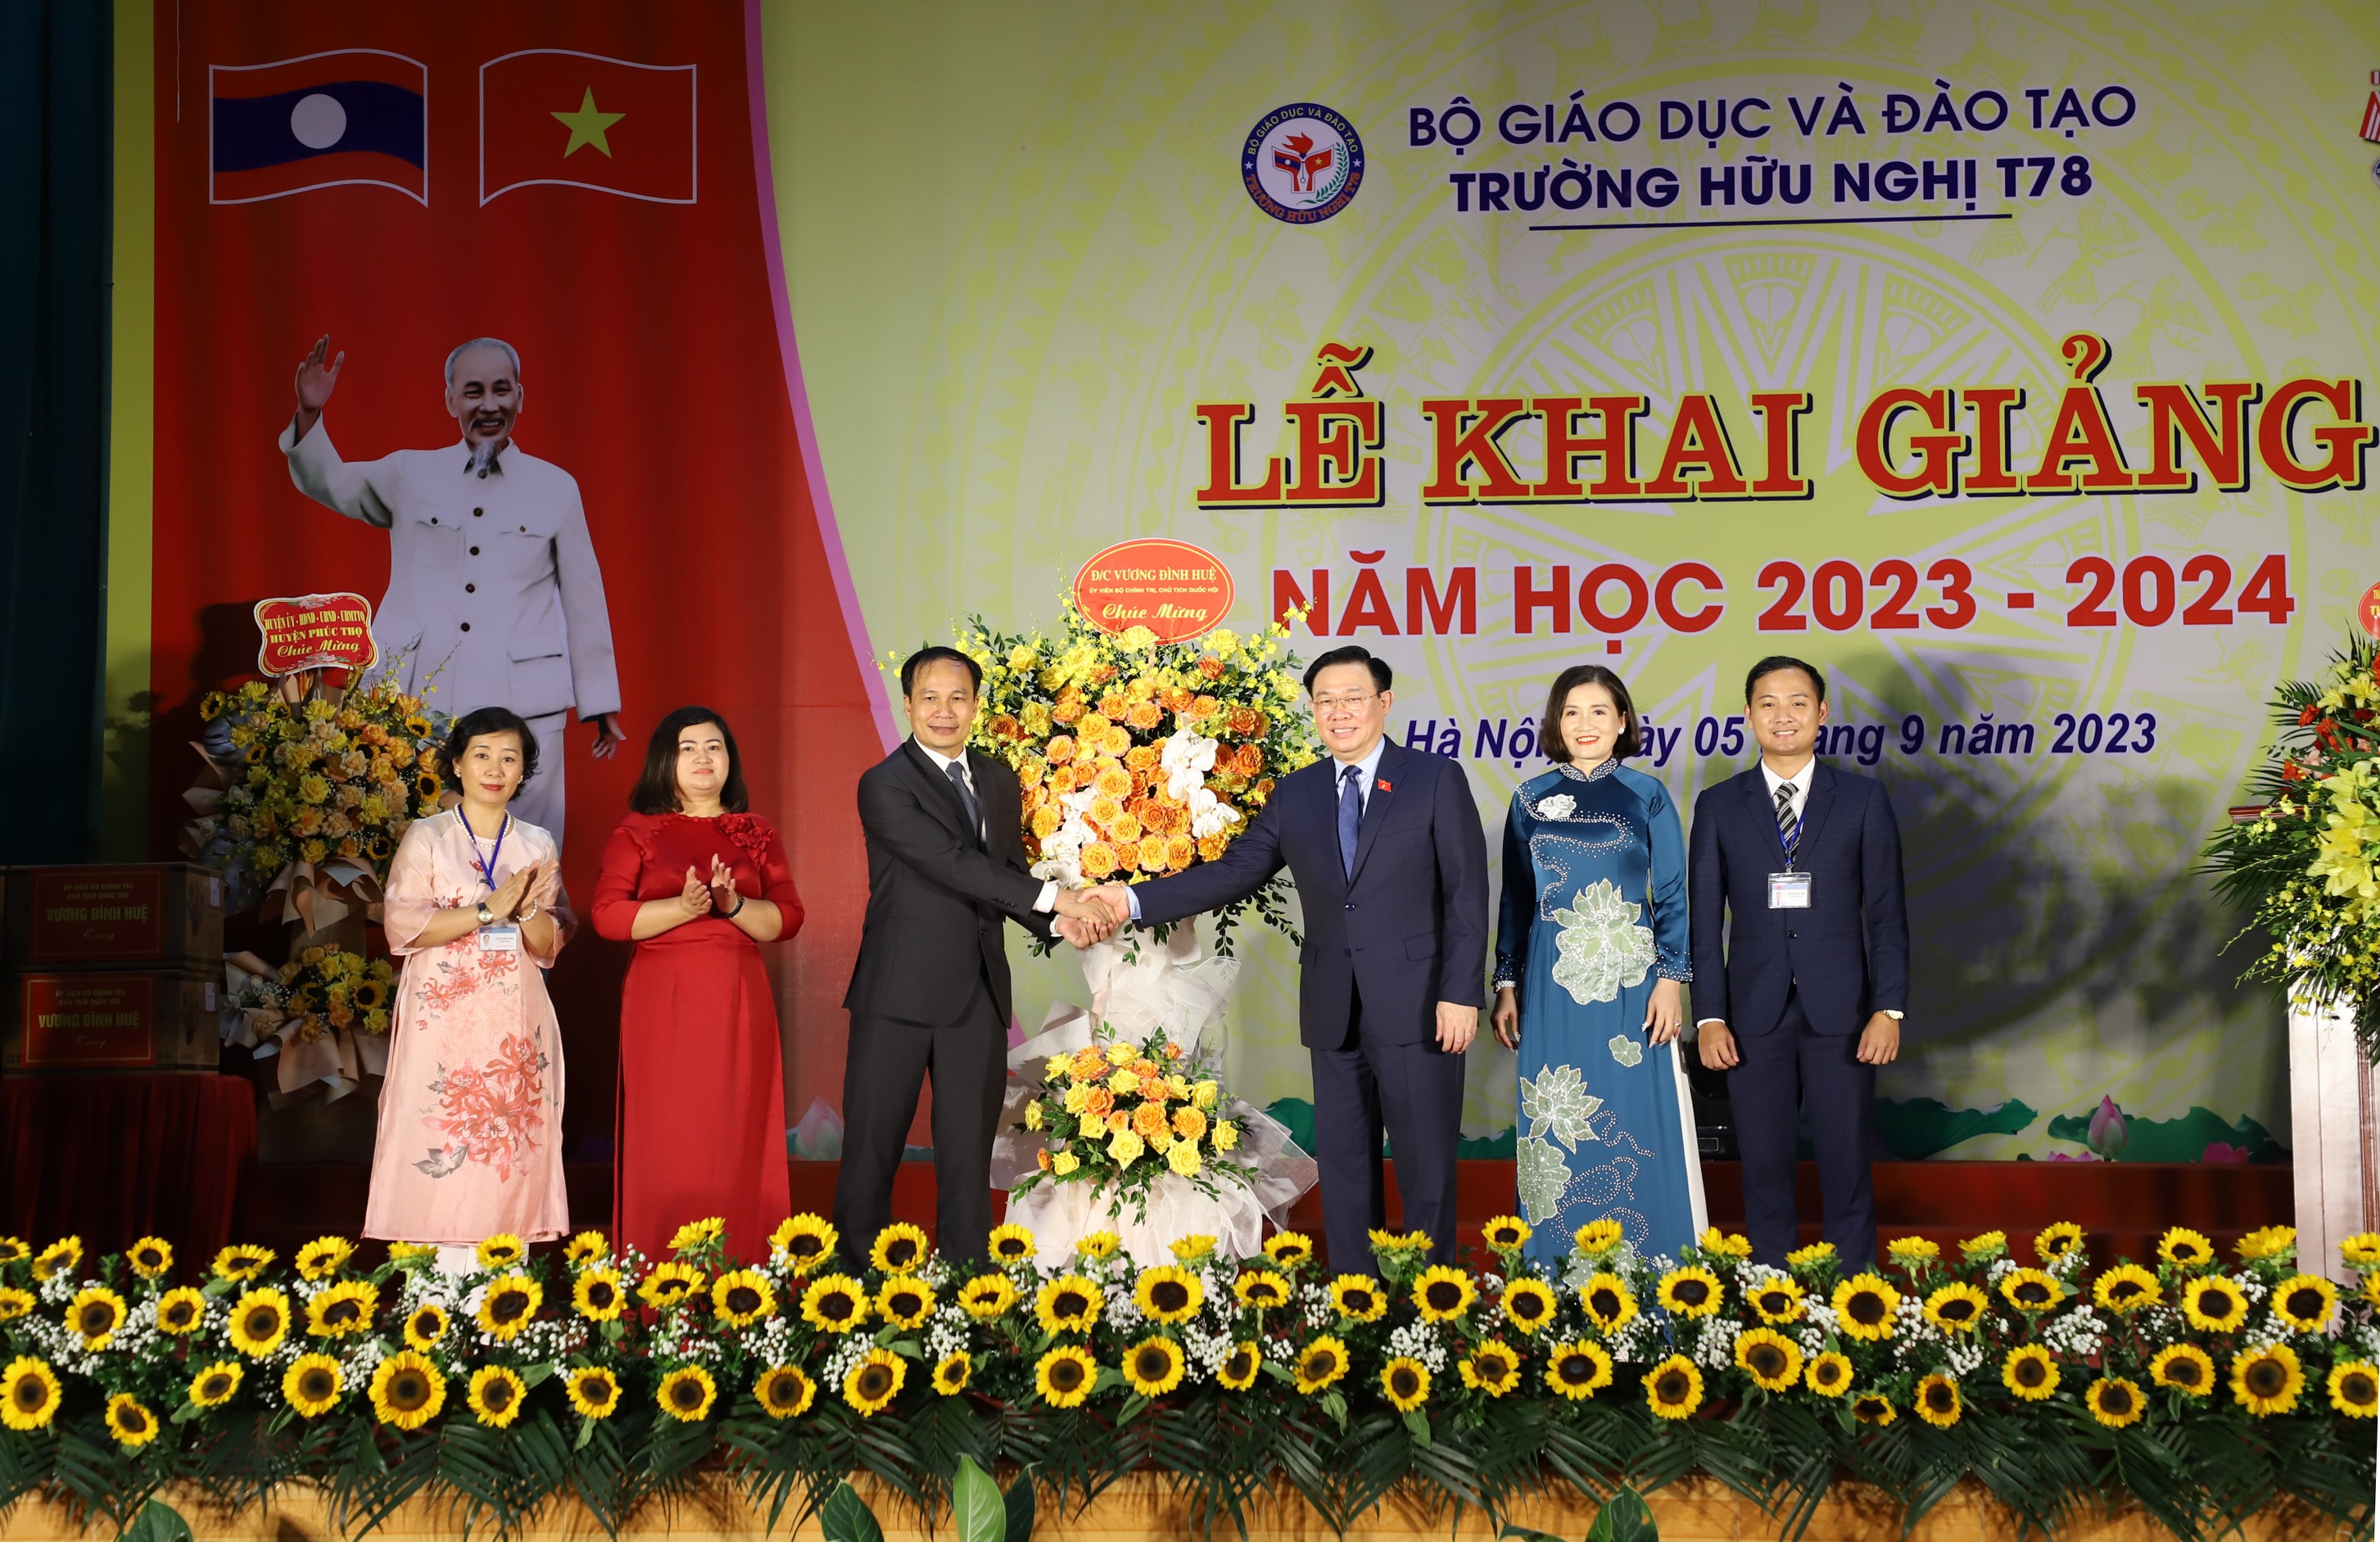 Chủ tịch Quốc hội Vương Đình Huệ: Trường Hữu nghị T78 là cầu nối vun đắp thêm mối quan hệ đặc biệt Việt- Lào